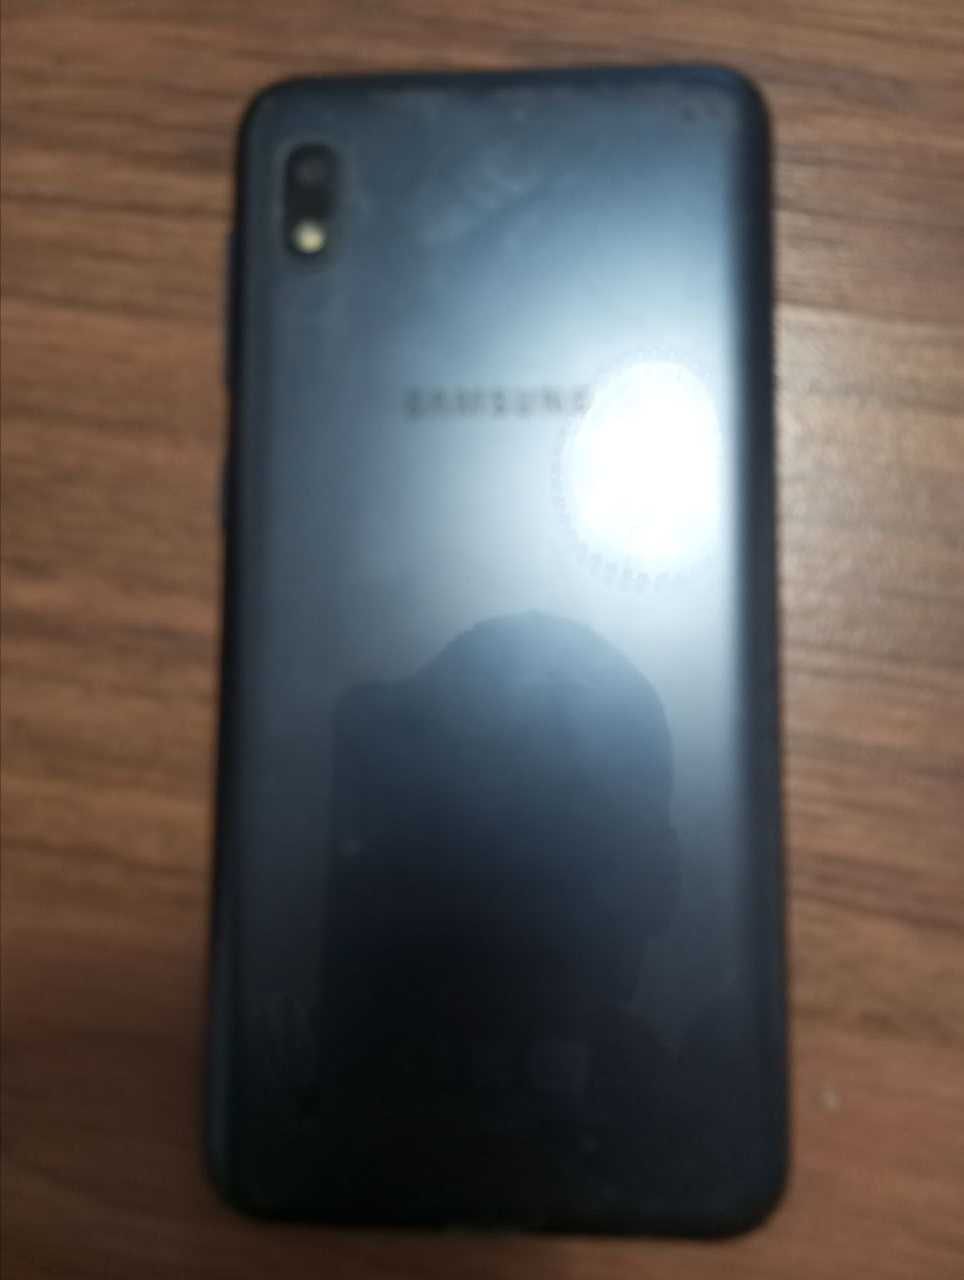 Продам телефон Samsung A10